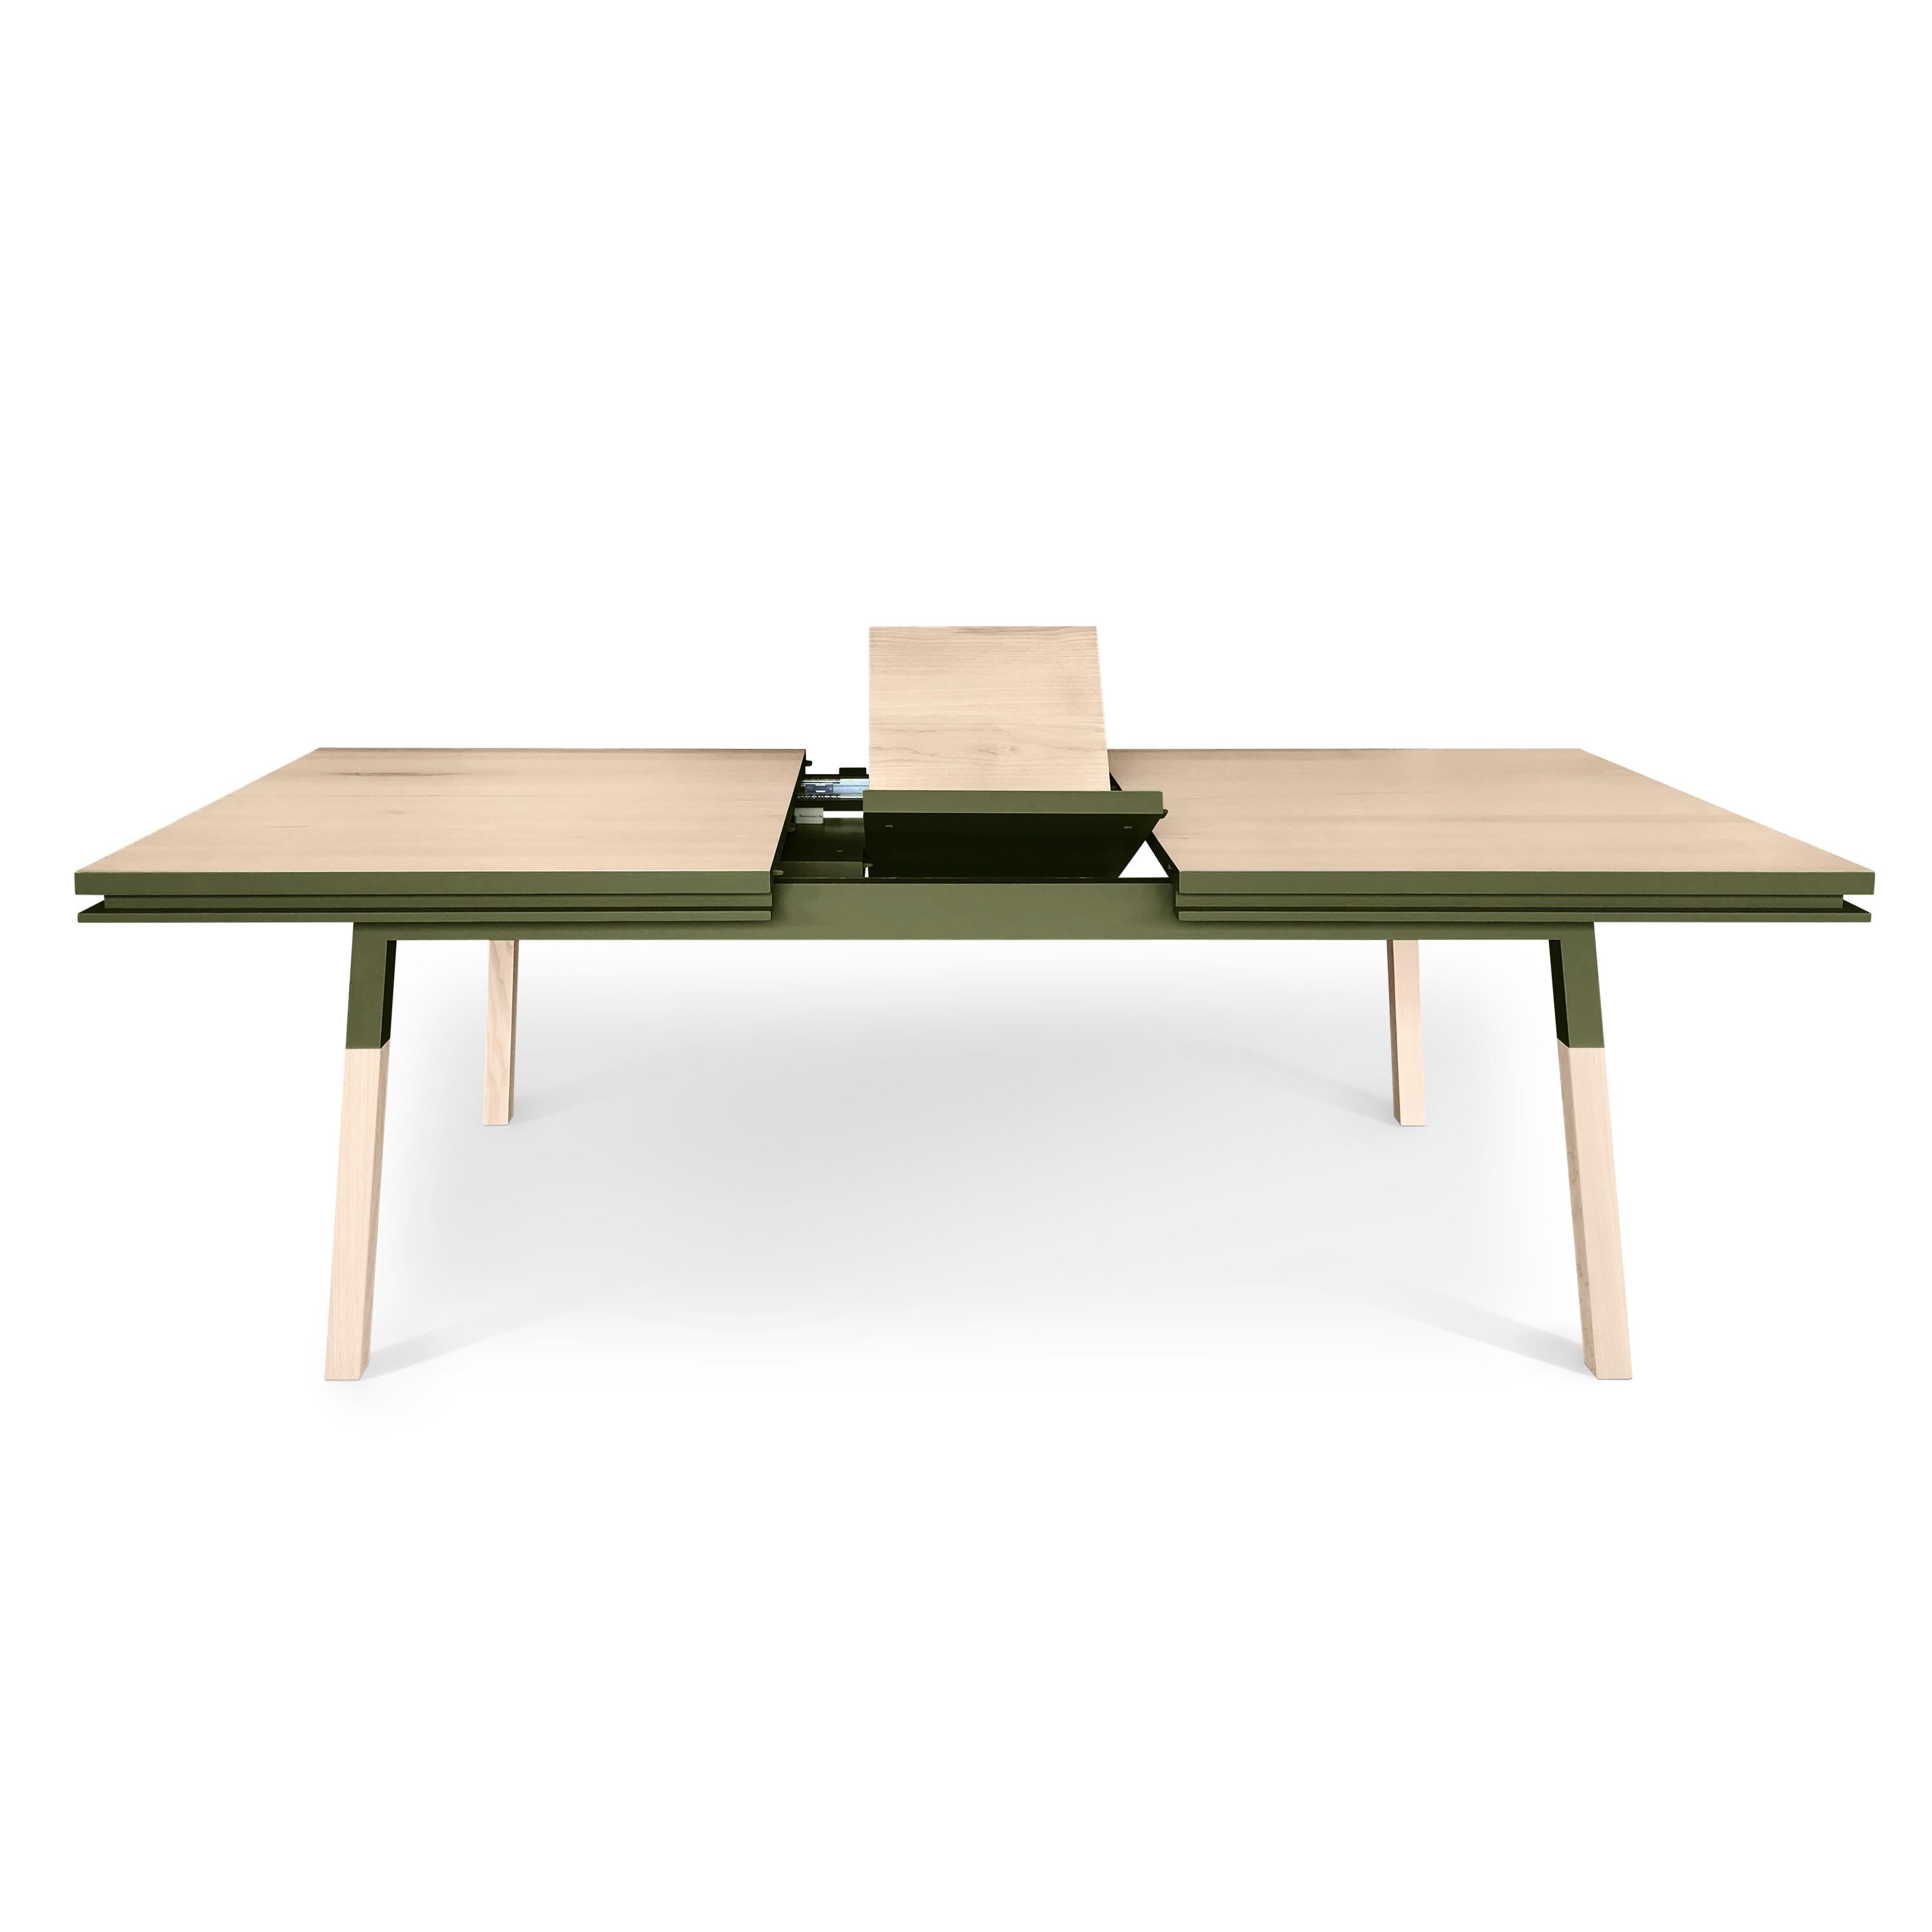 Cette table de salle à manger rectangulaire est proposée avec 2 extensions intégrées et repliées. 

Il est fabriqué en bois de frêne 100% massif provenant de forêts françaises gérées durablement et certifiées PEFC.

Les 3 longueurs sont 180 cm /